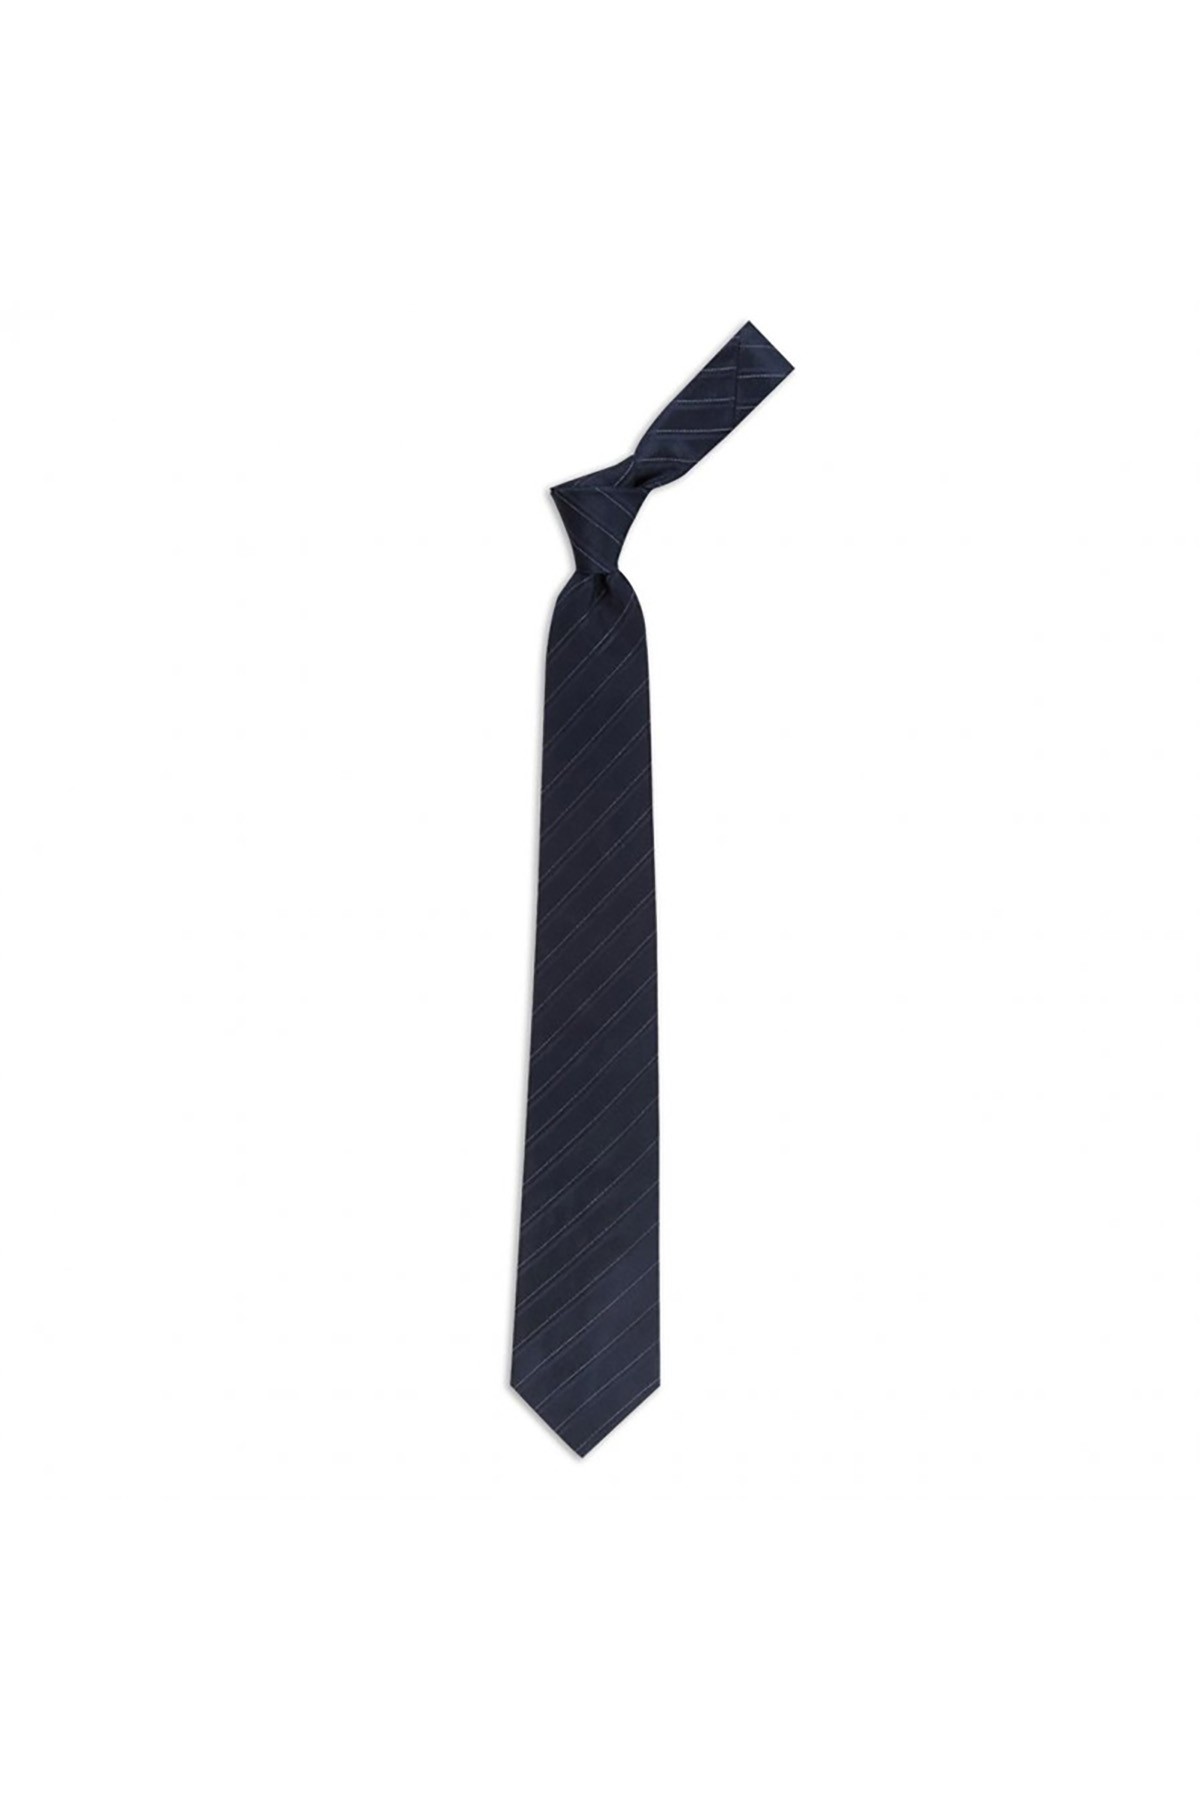 Klasik çizgili 8 cm genişliğinde ipek kravat - Lacivert